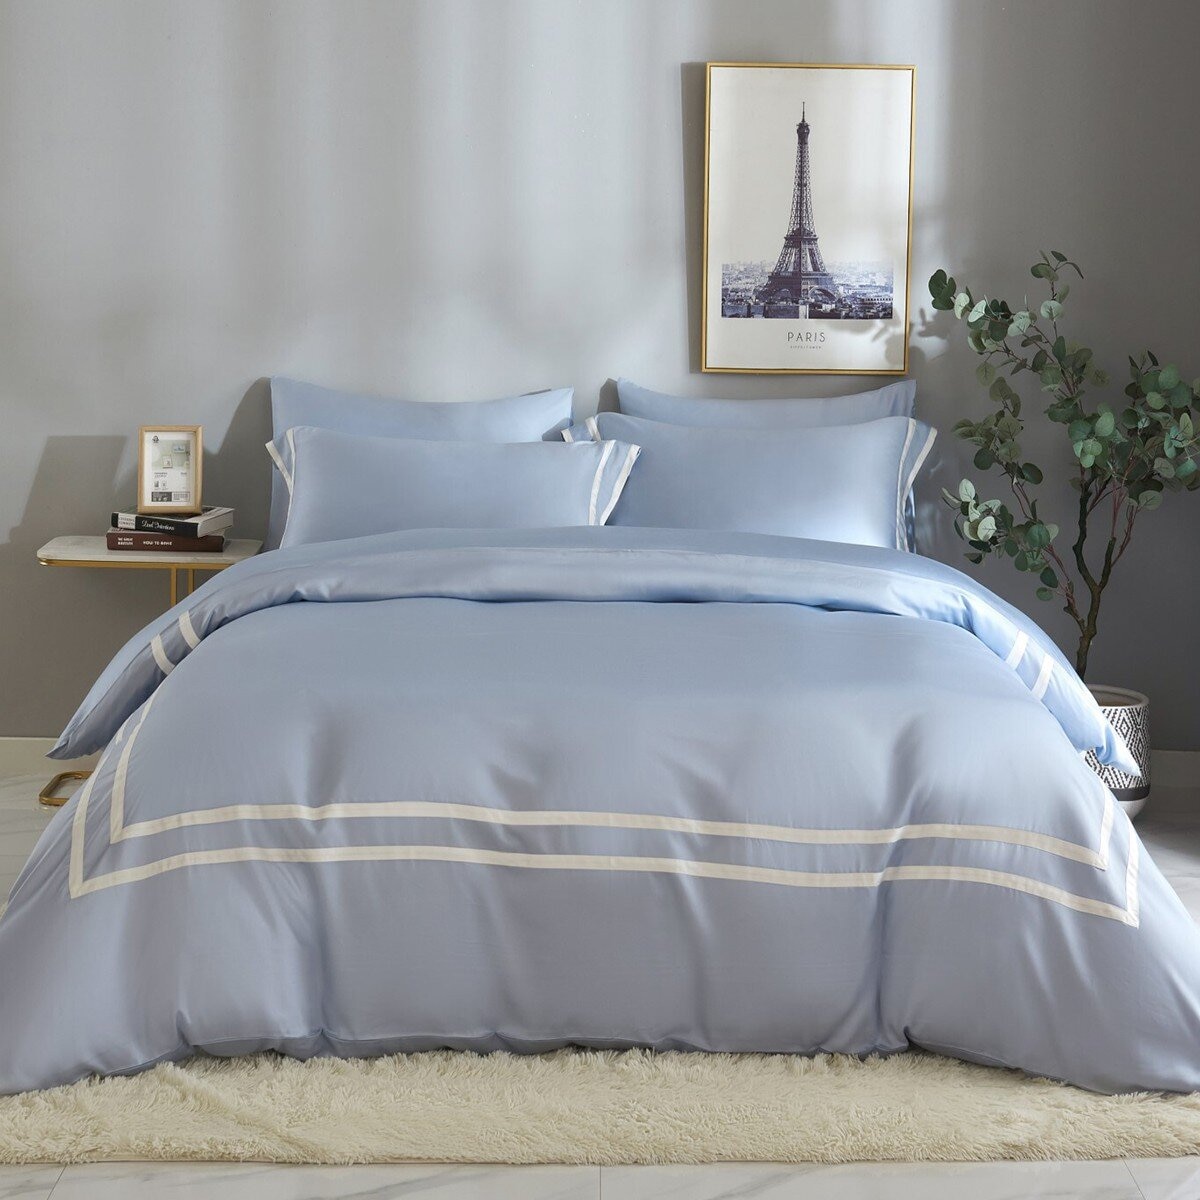 Don Home 萊賽爾素色雙人特大被套床包六件組 182公分 X 212公分 天藍